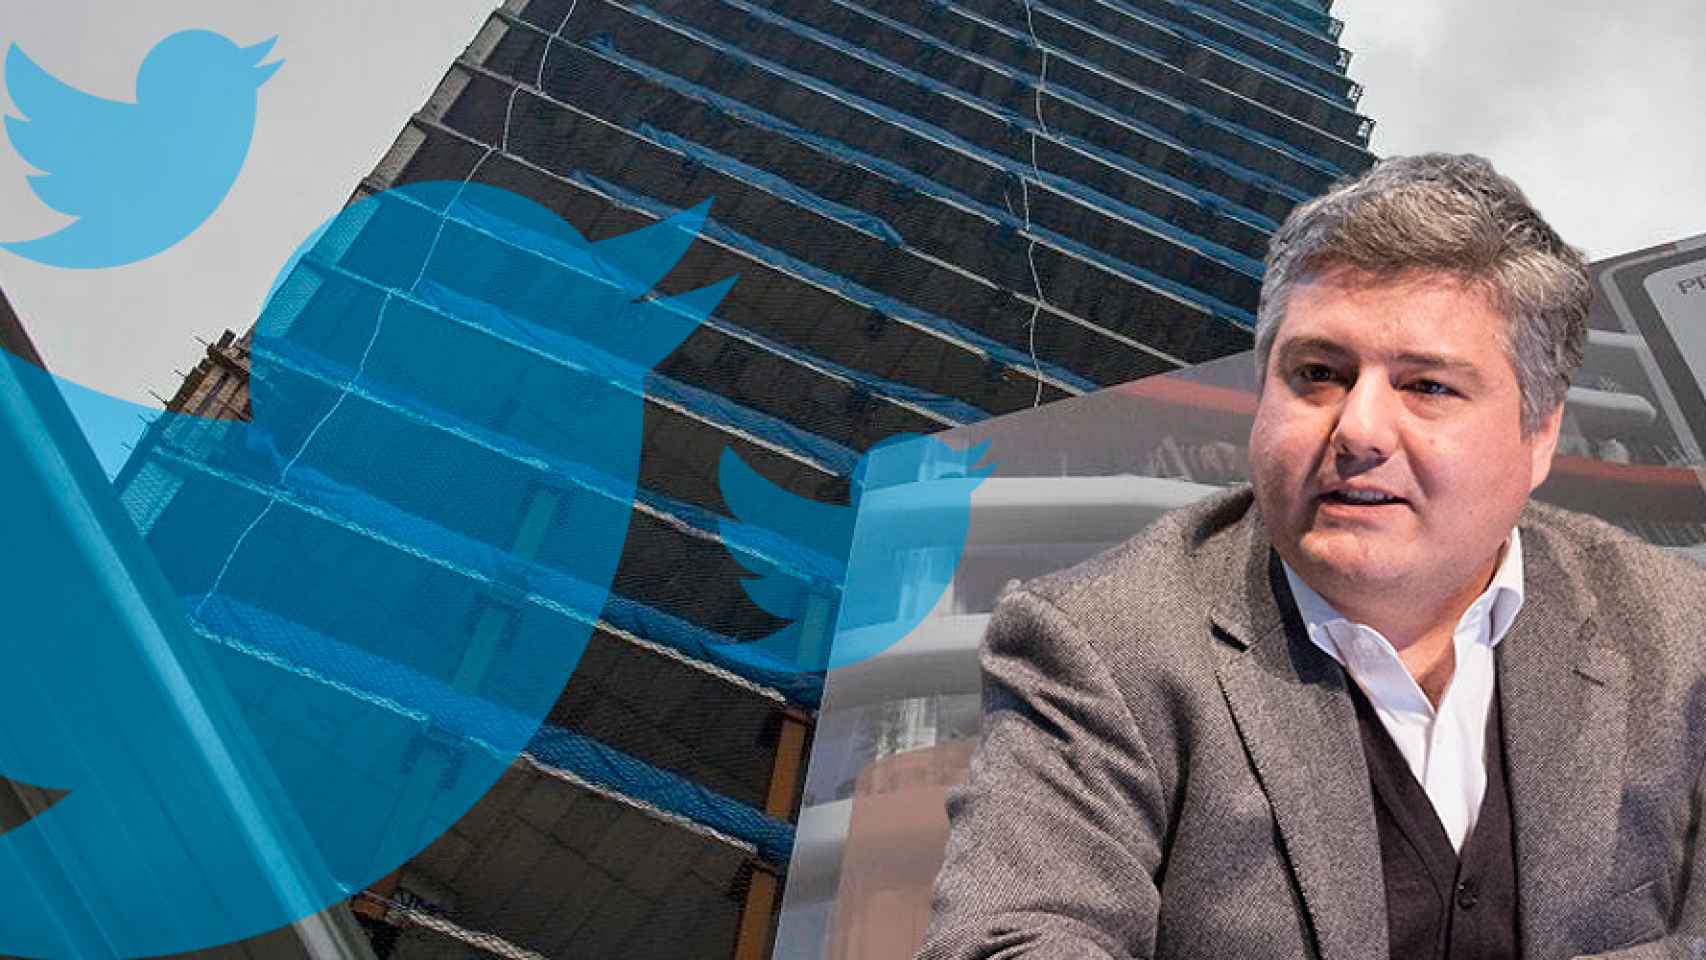 Javier Burón, gerente de vivienda del Ayuntamiento de Barcelona, junto a un edificio de vivienda y el logo de Twitter / MA